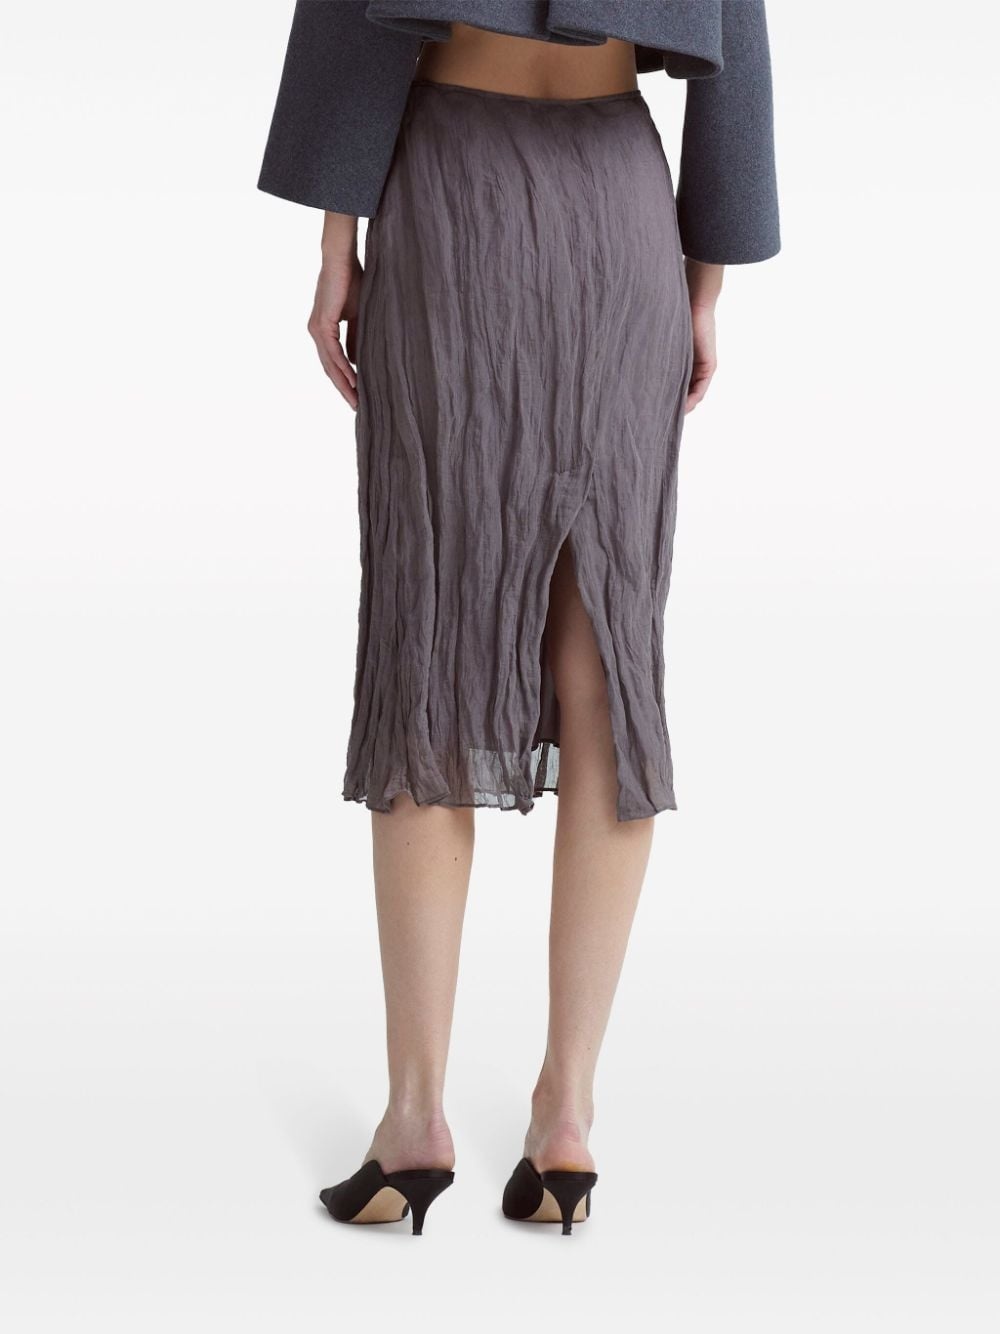 Bresson crinkled pencil skirt - 5